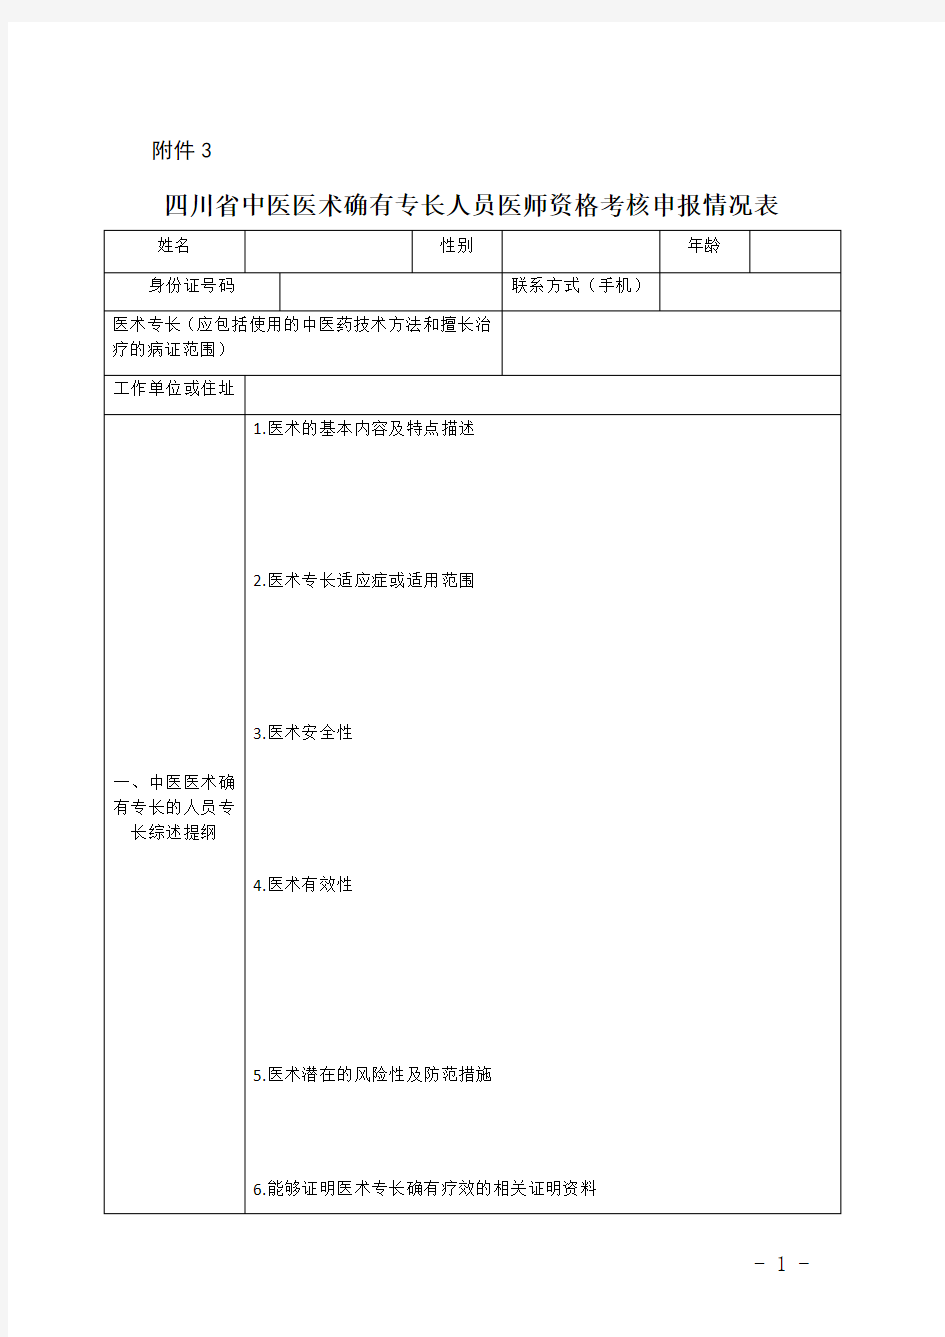 四川省中医医术确有专长人员医师资格考核申报情况表